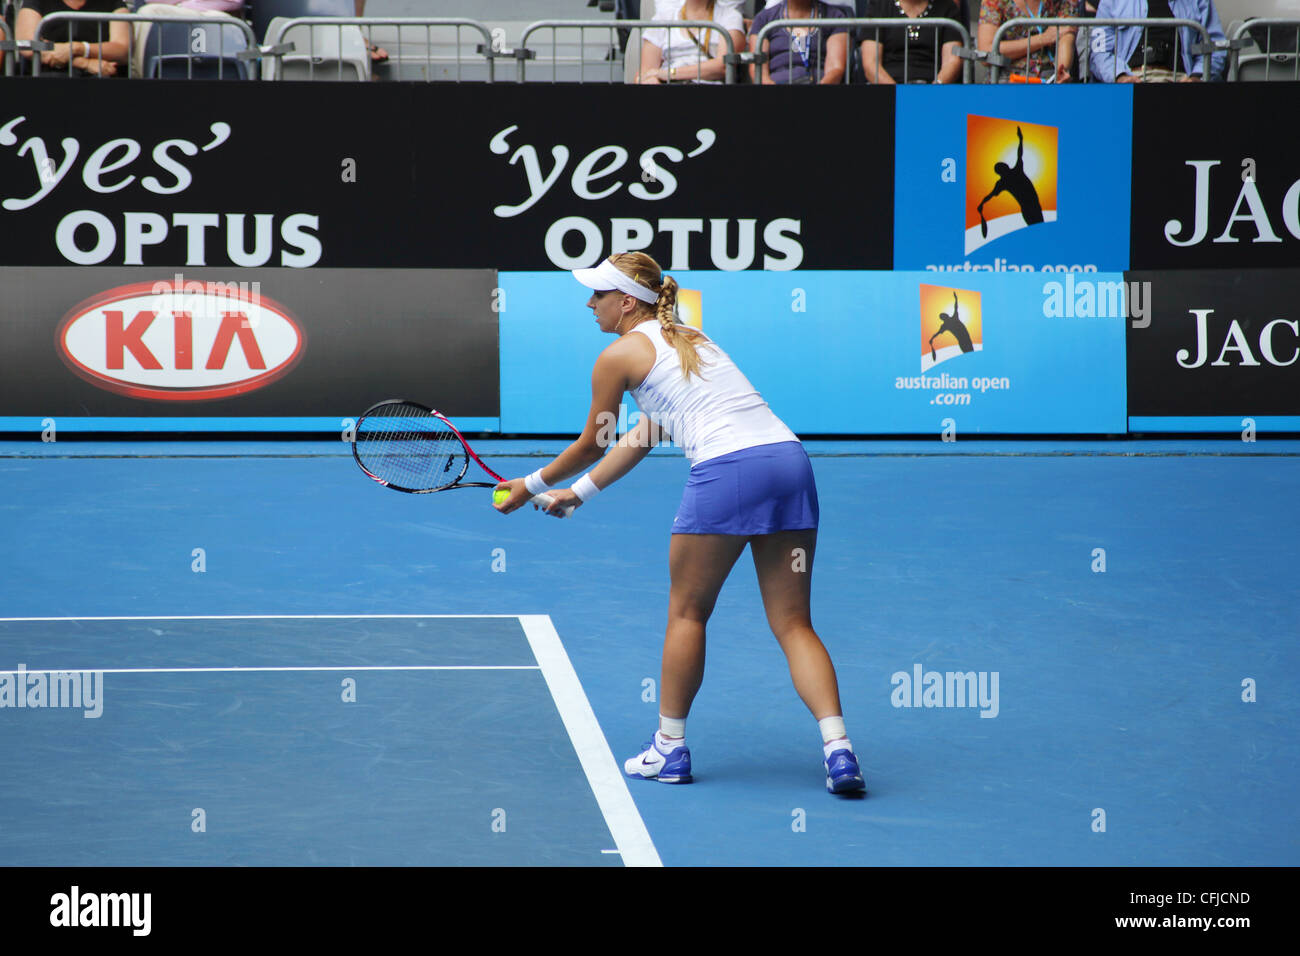 MELBOURNE, AUSTRALIE - janvier 21, 2012 : WTA tennis player Sabine Lisicki se prépare à servir de Svetlana Kuznetsova. Banque D'Images